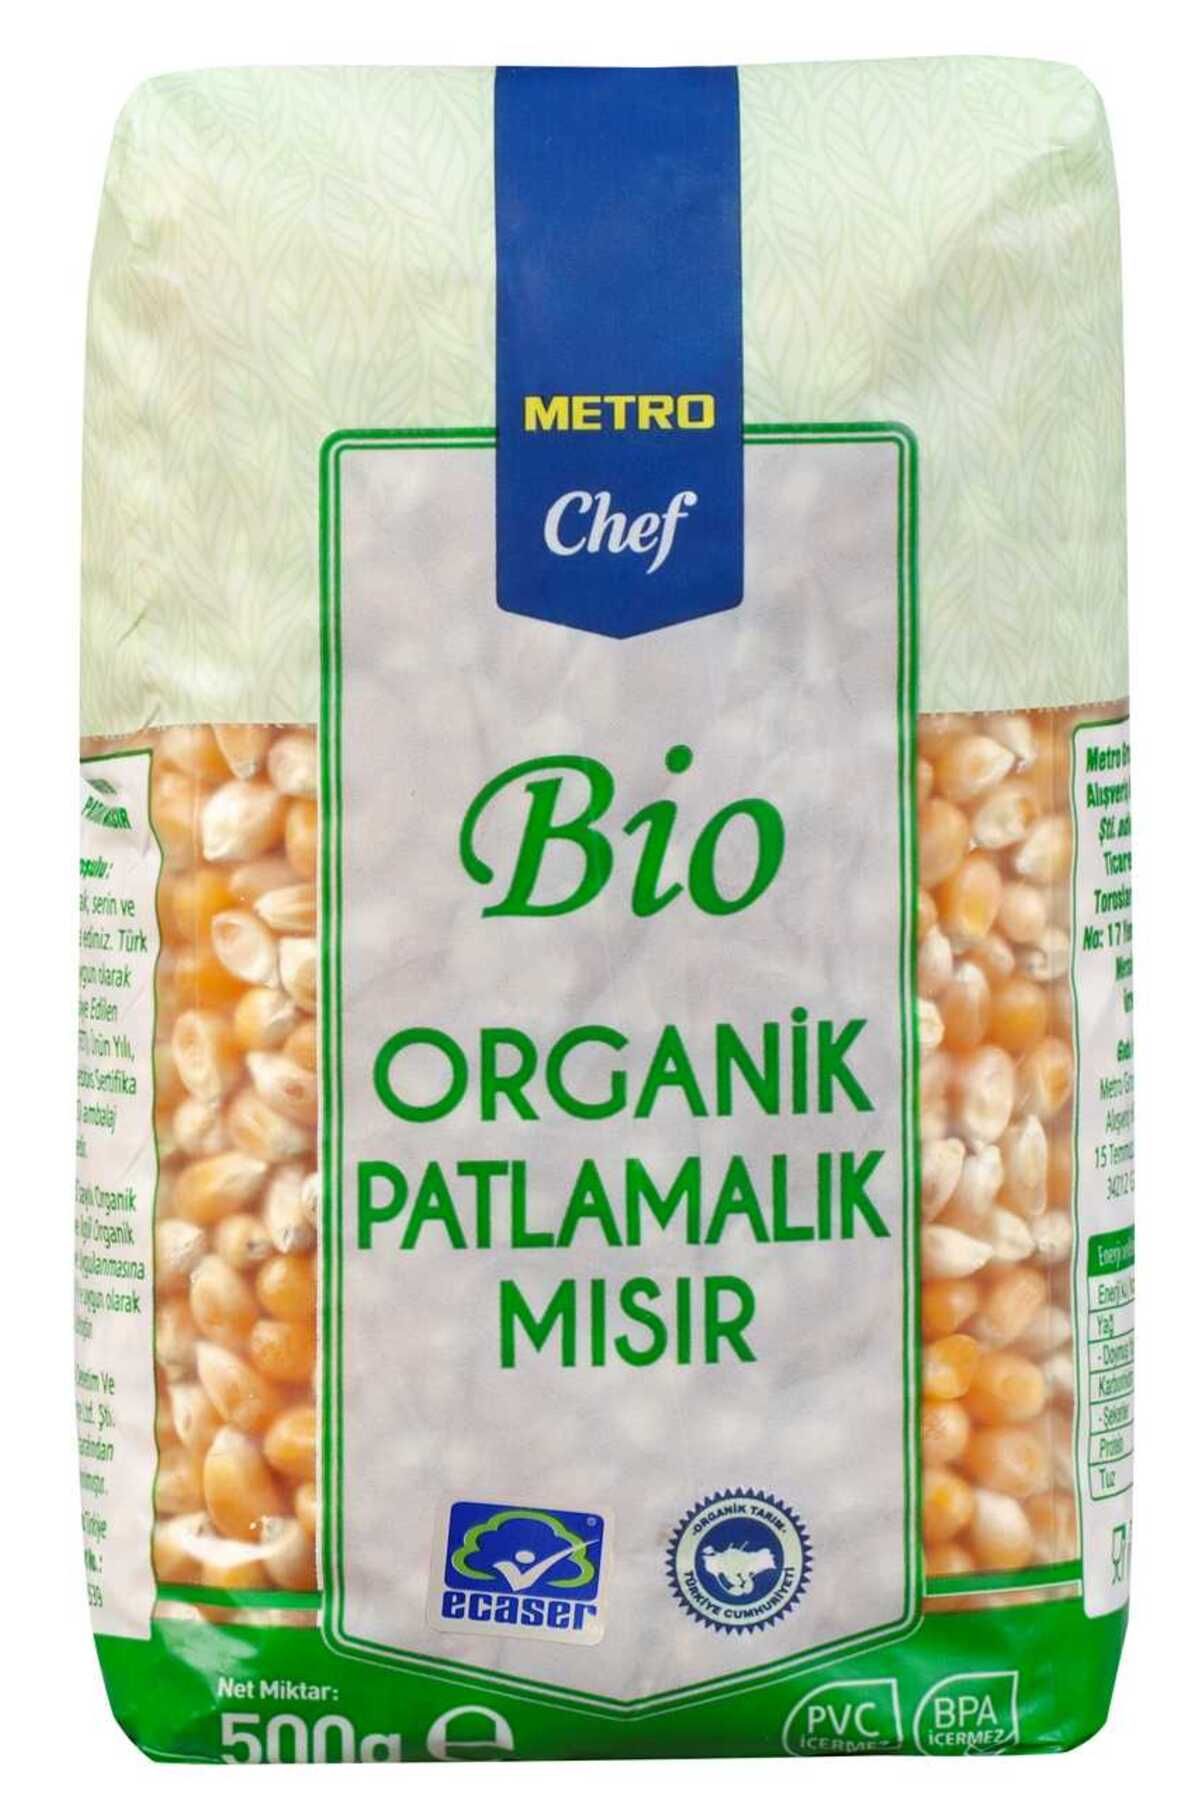 Metro Chef Bio Popcorn Patlatmalık Mısır 500g 2 Paket Şef Mutfak Baklagil Kuru Gıda Organik